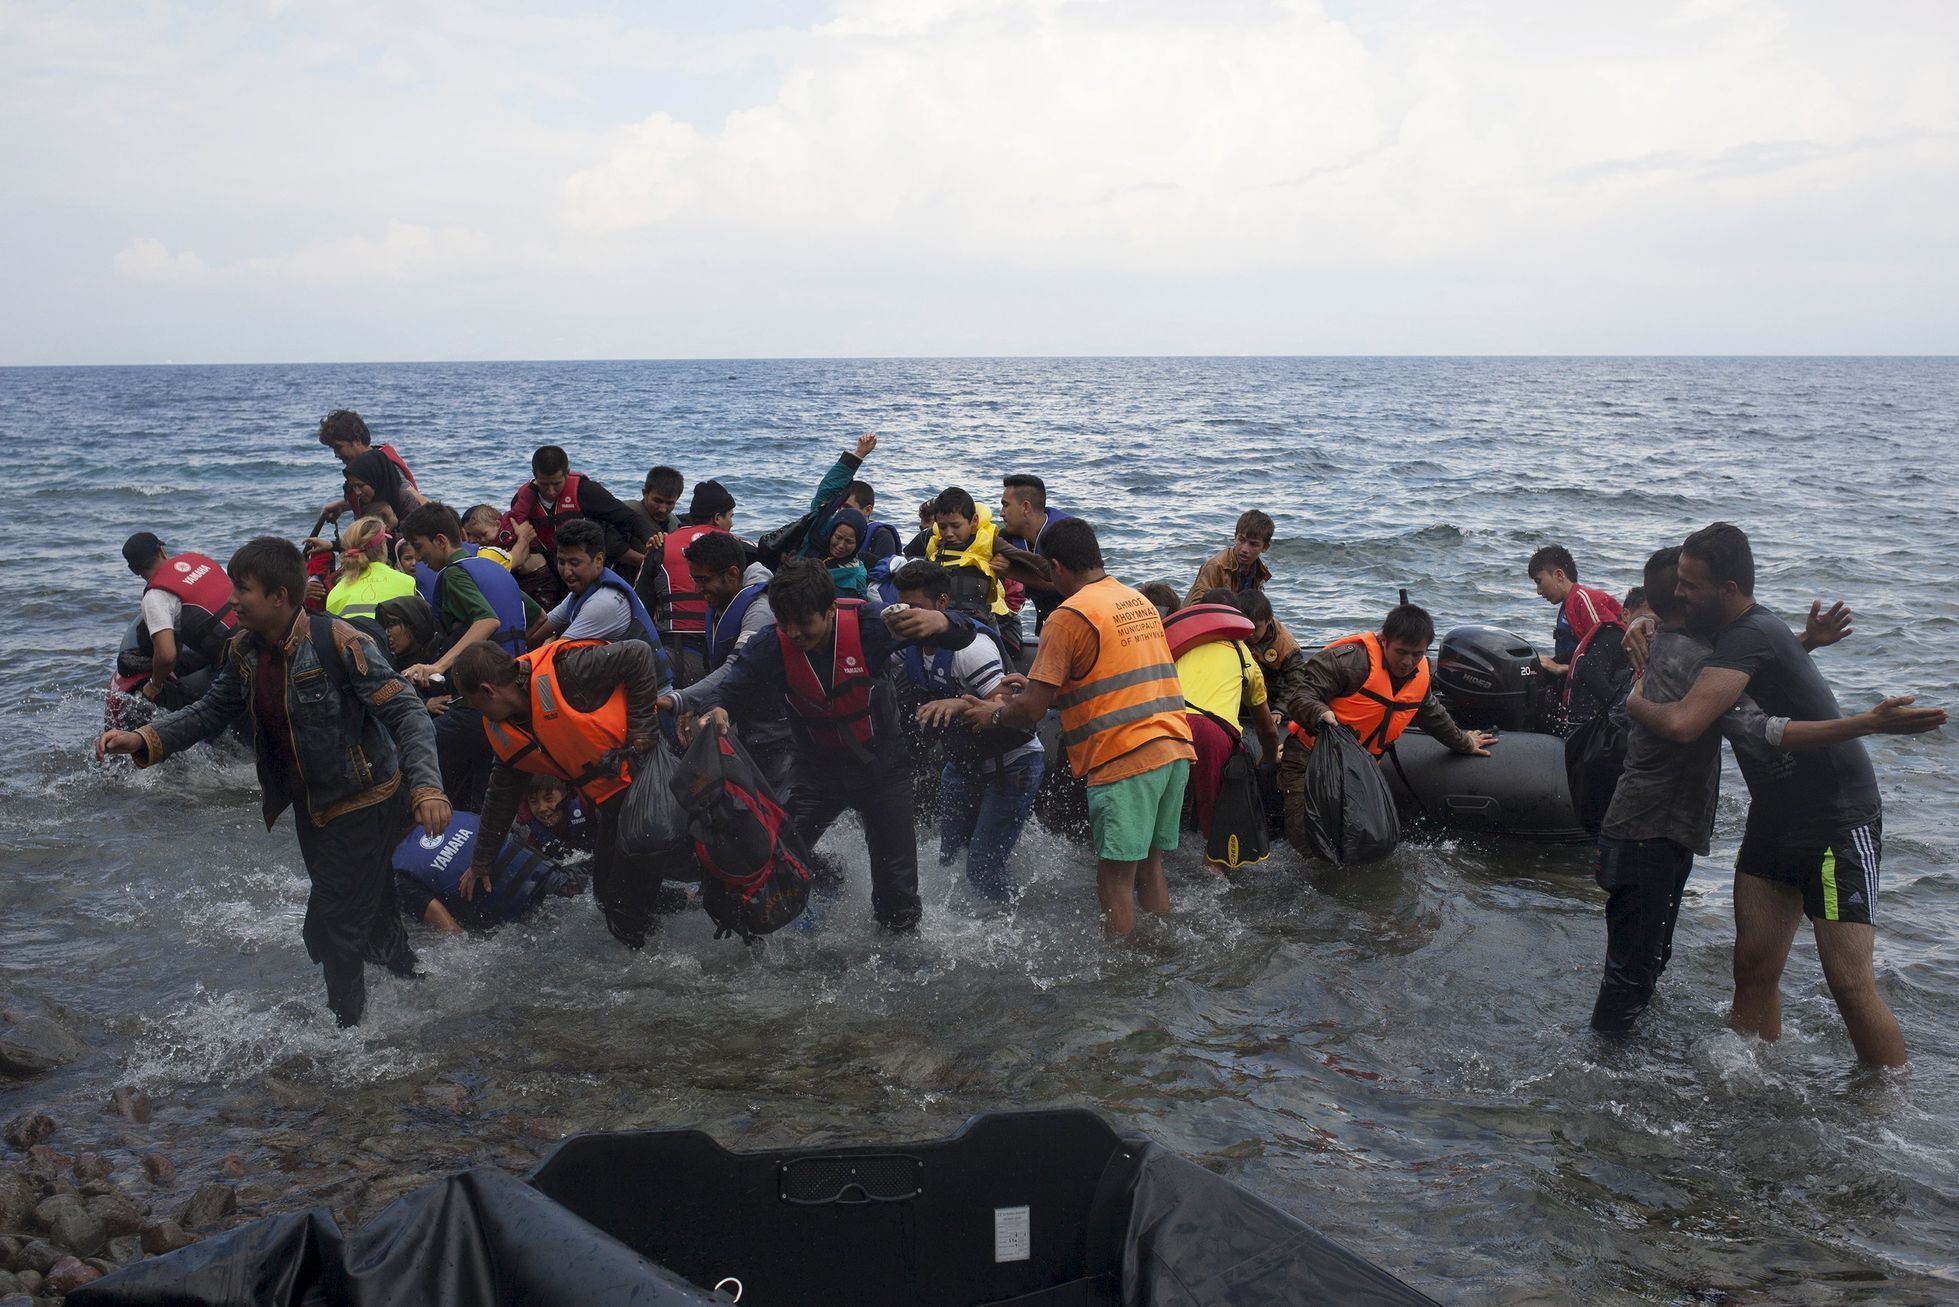 Uprchlíci - Středozemní moře